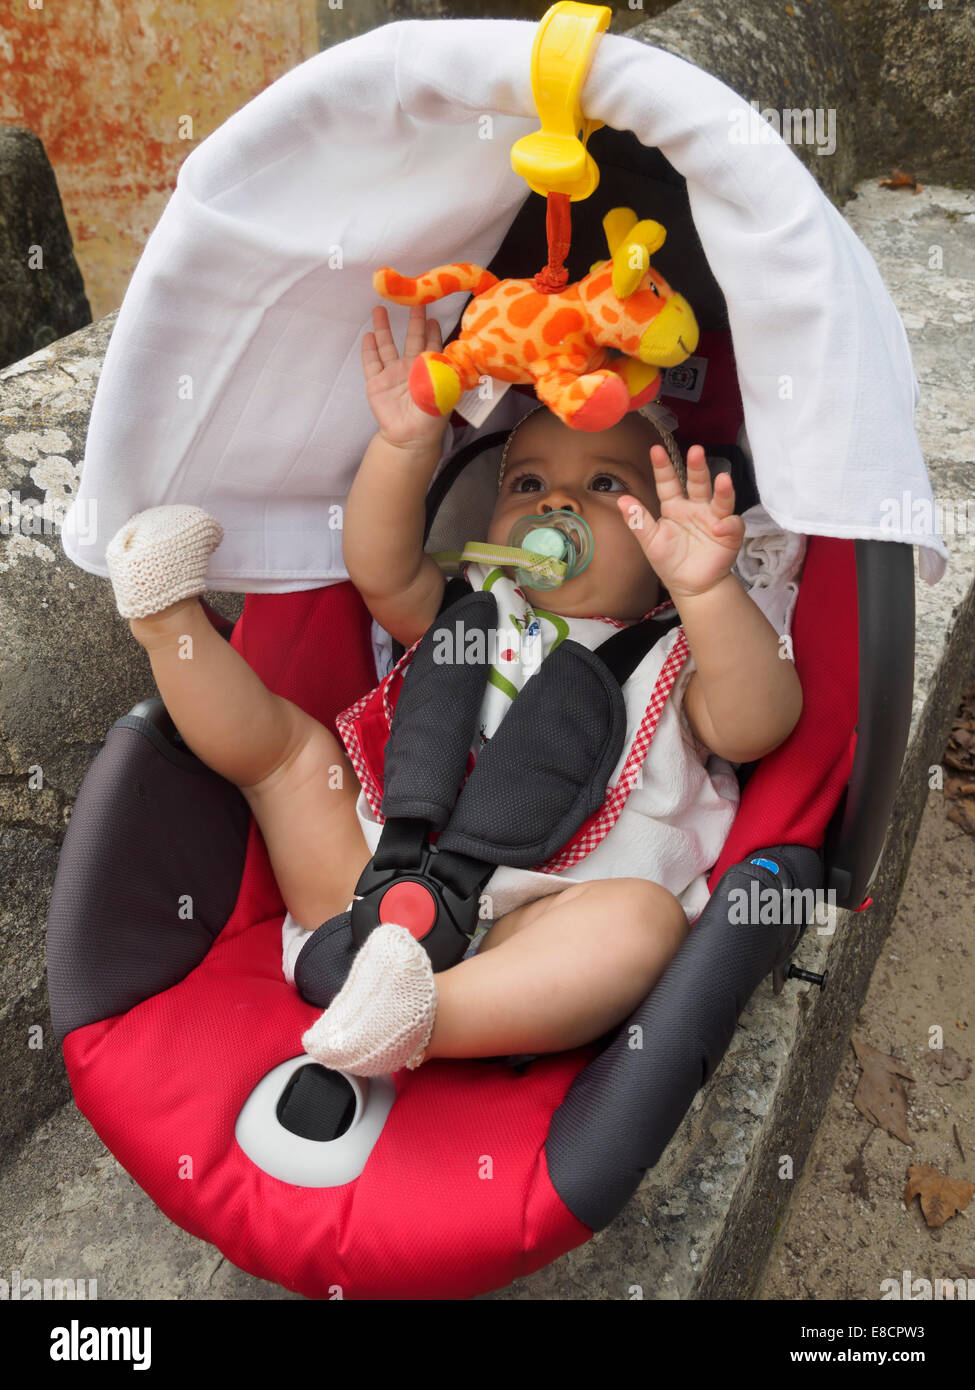 Baby spielt mit Spielzeug Giraffe, während in einem Kindersitz angeschnallt Stockfoto